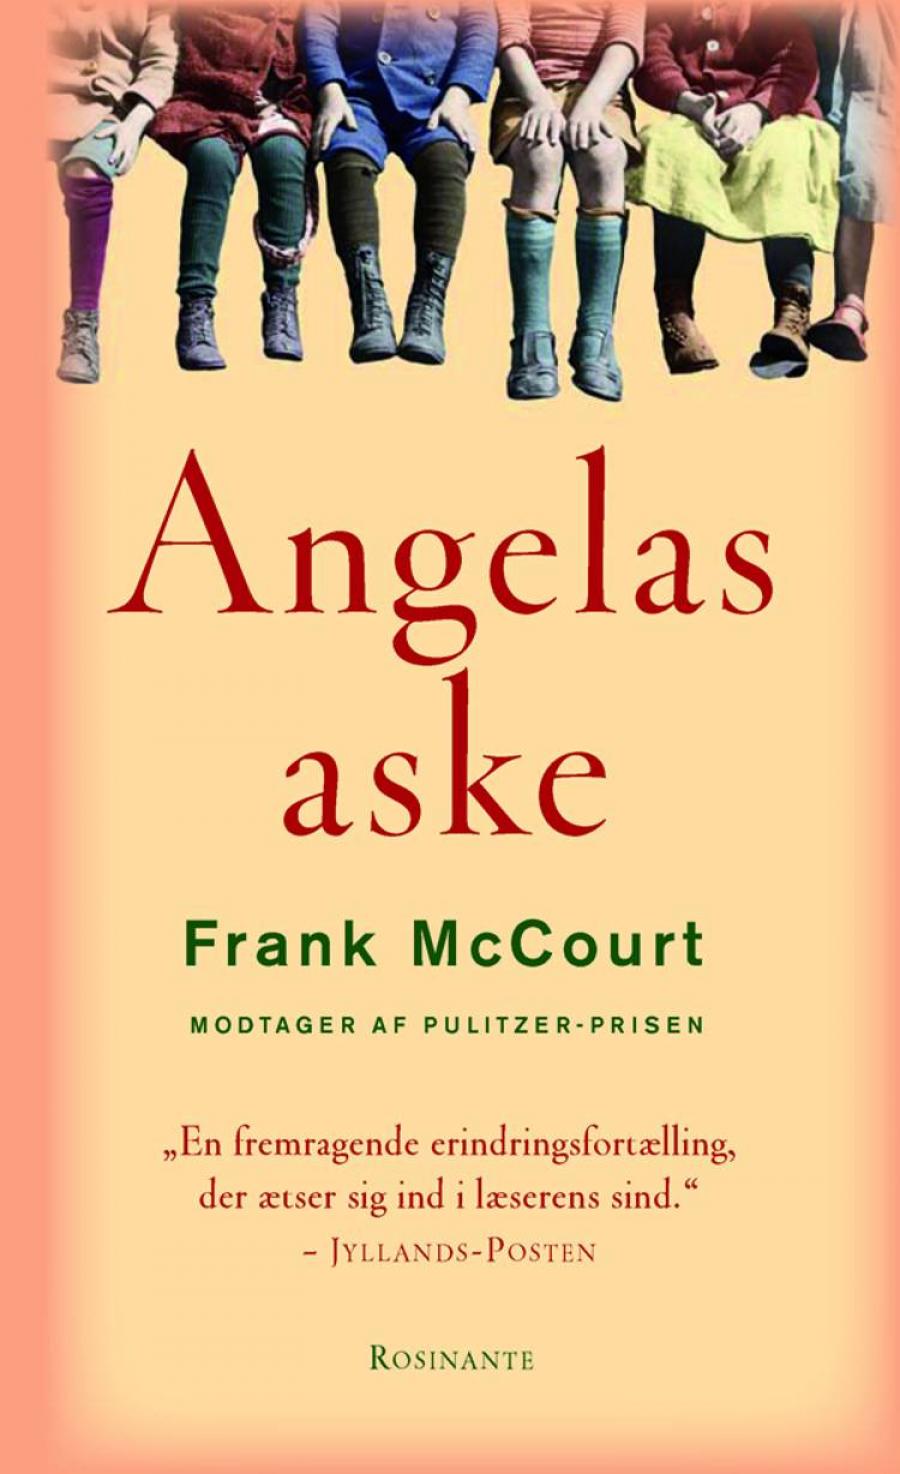 Forsiden på "Angelas aske" af Frank Mccourt